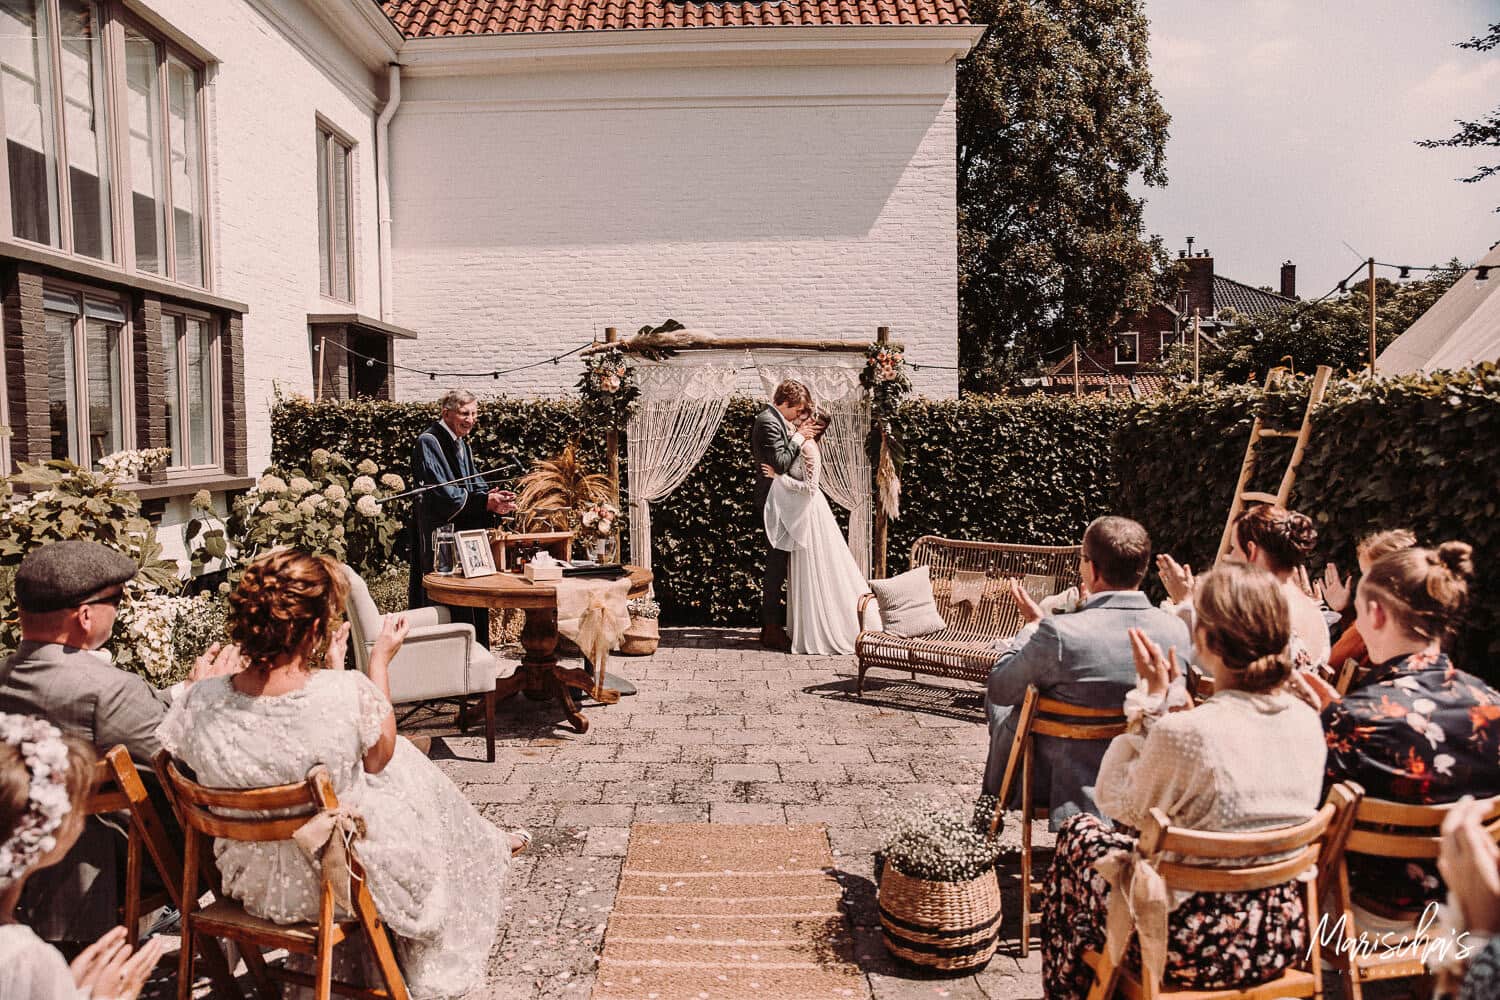 Bruidsfotograaf voor een bruidsreportage van een bruiloft in regio Zeeland